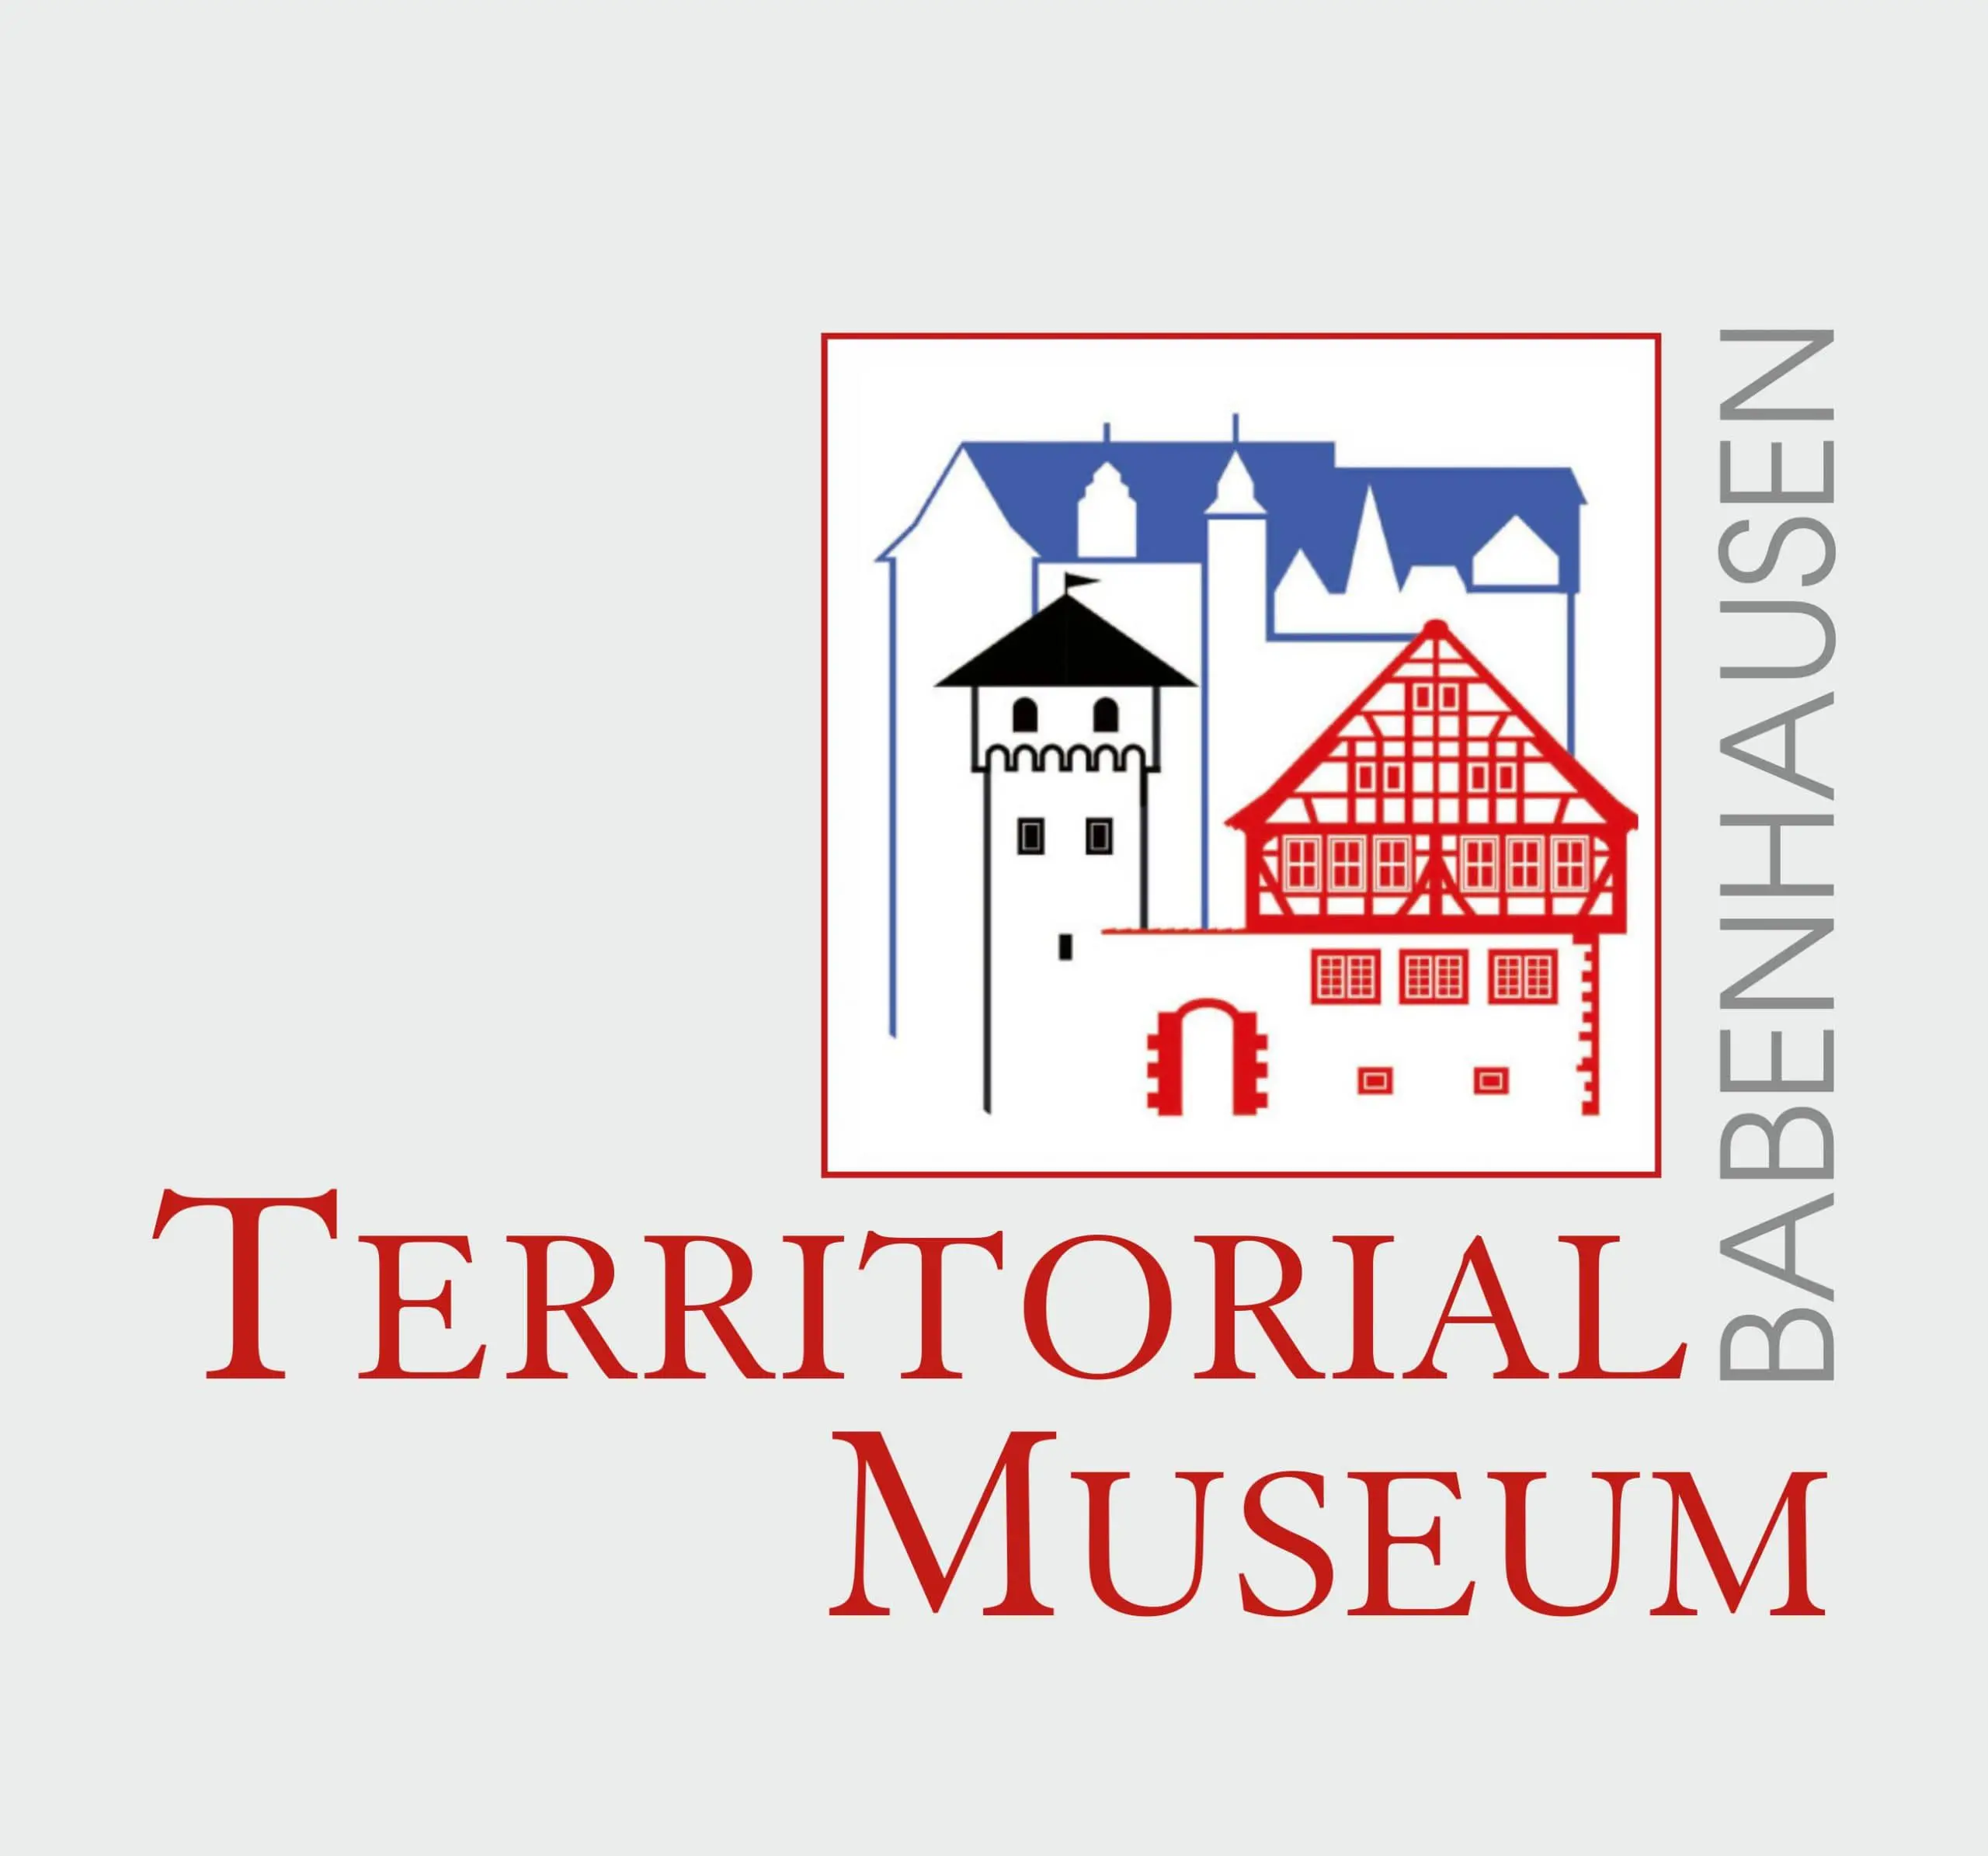 Territorial Museum